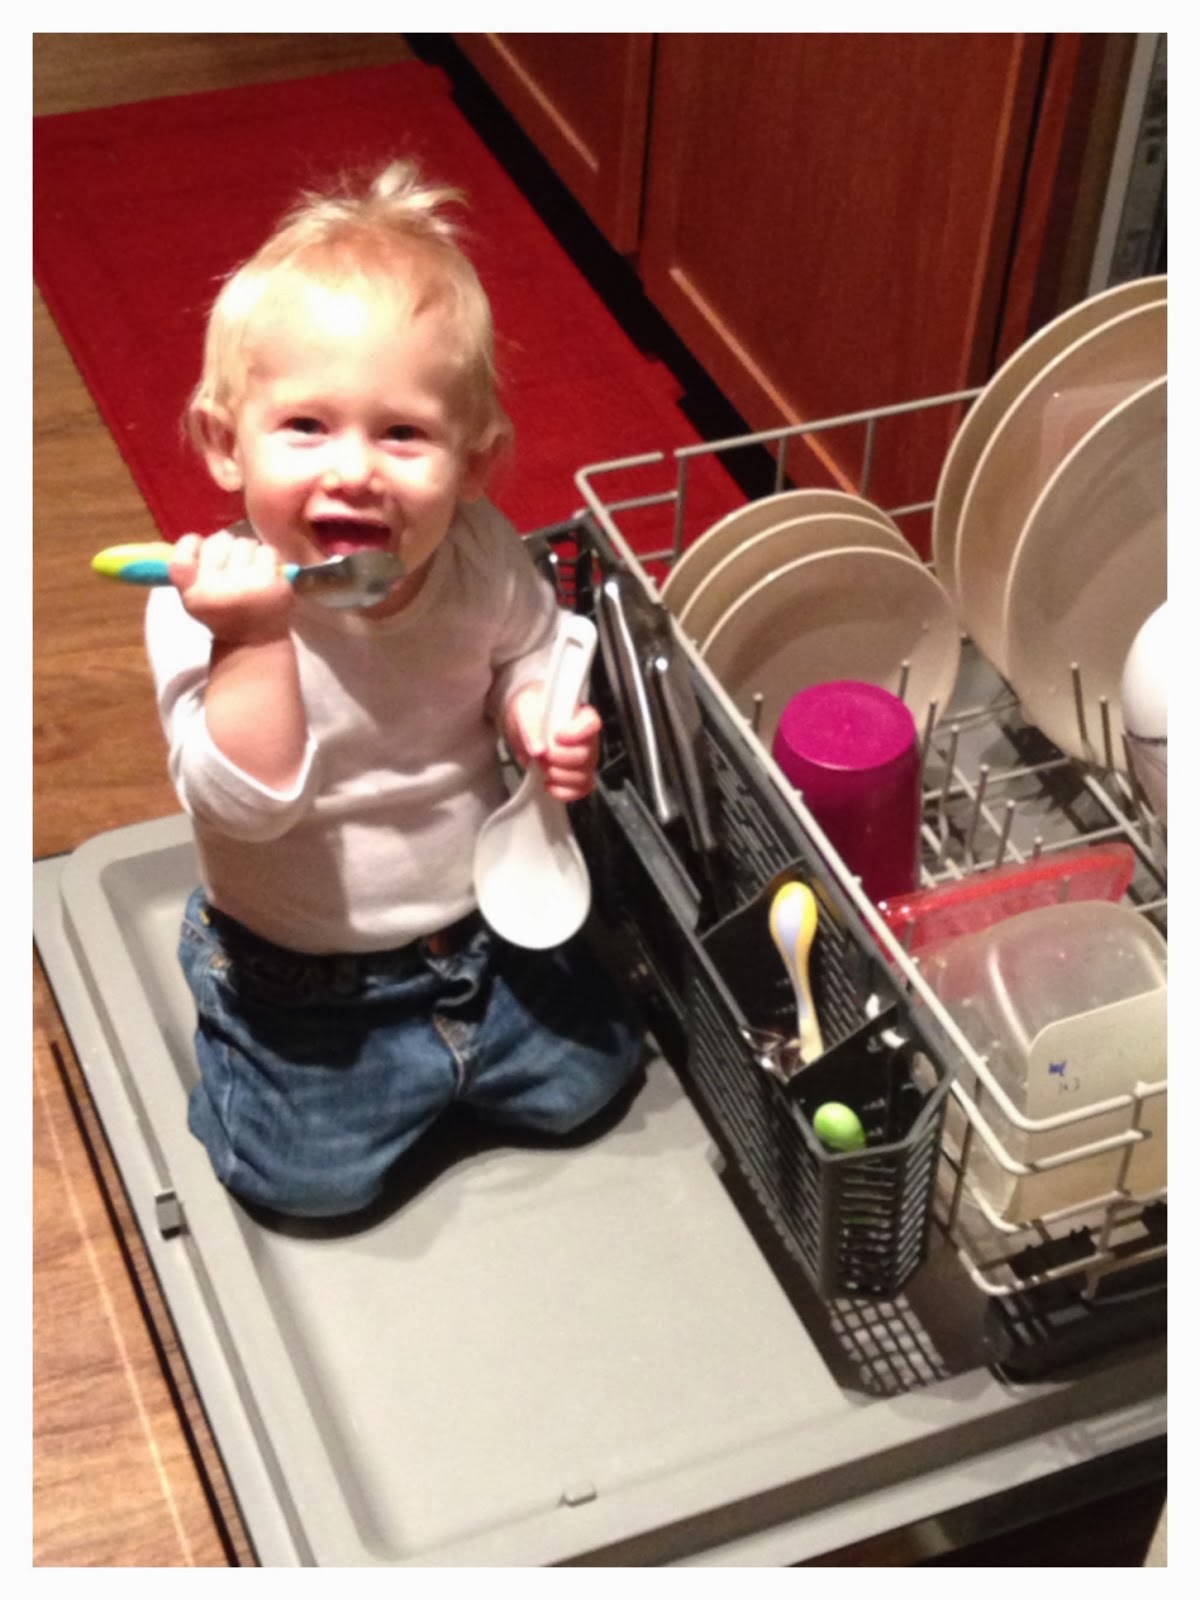 Dishwasher fun